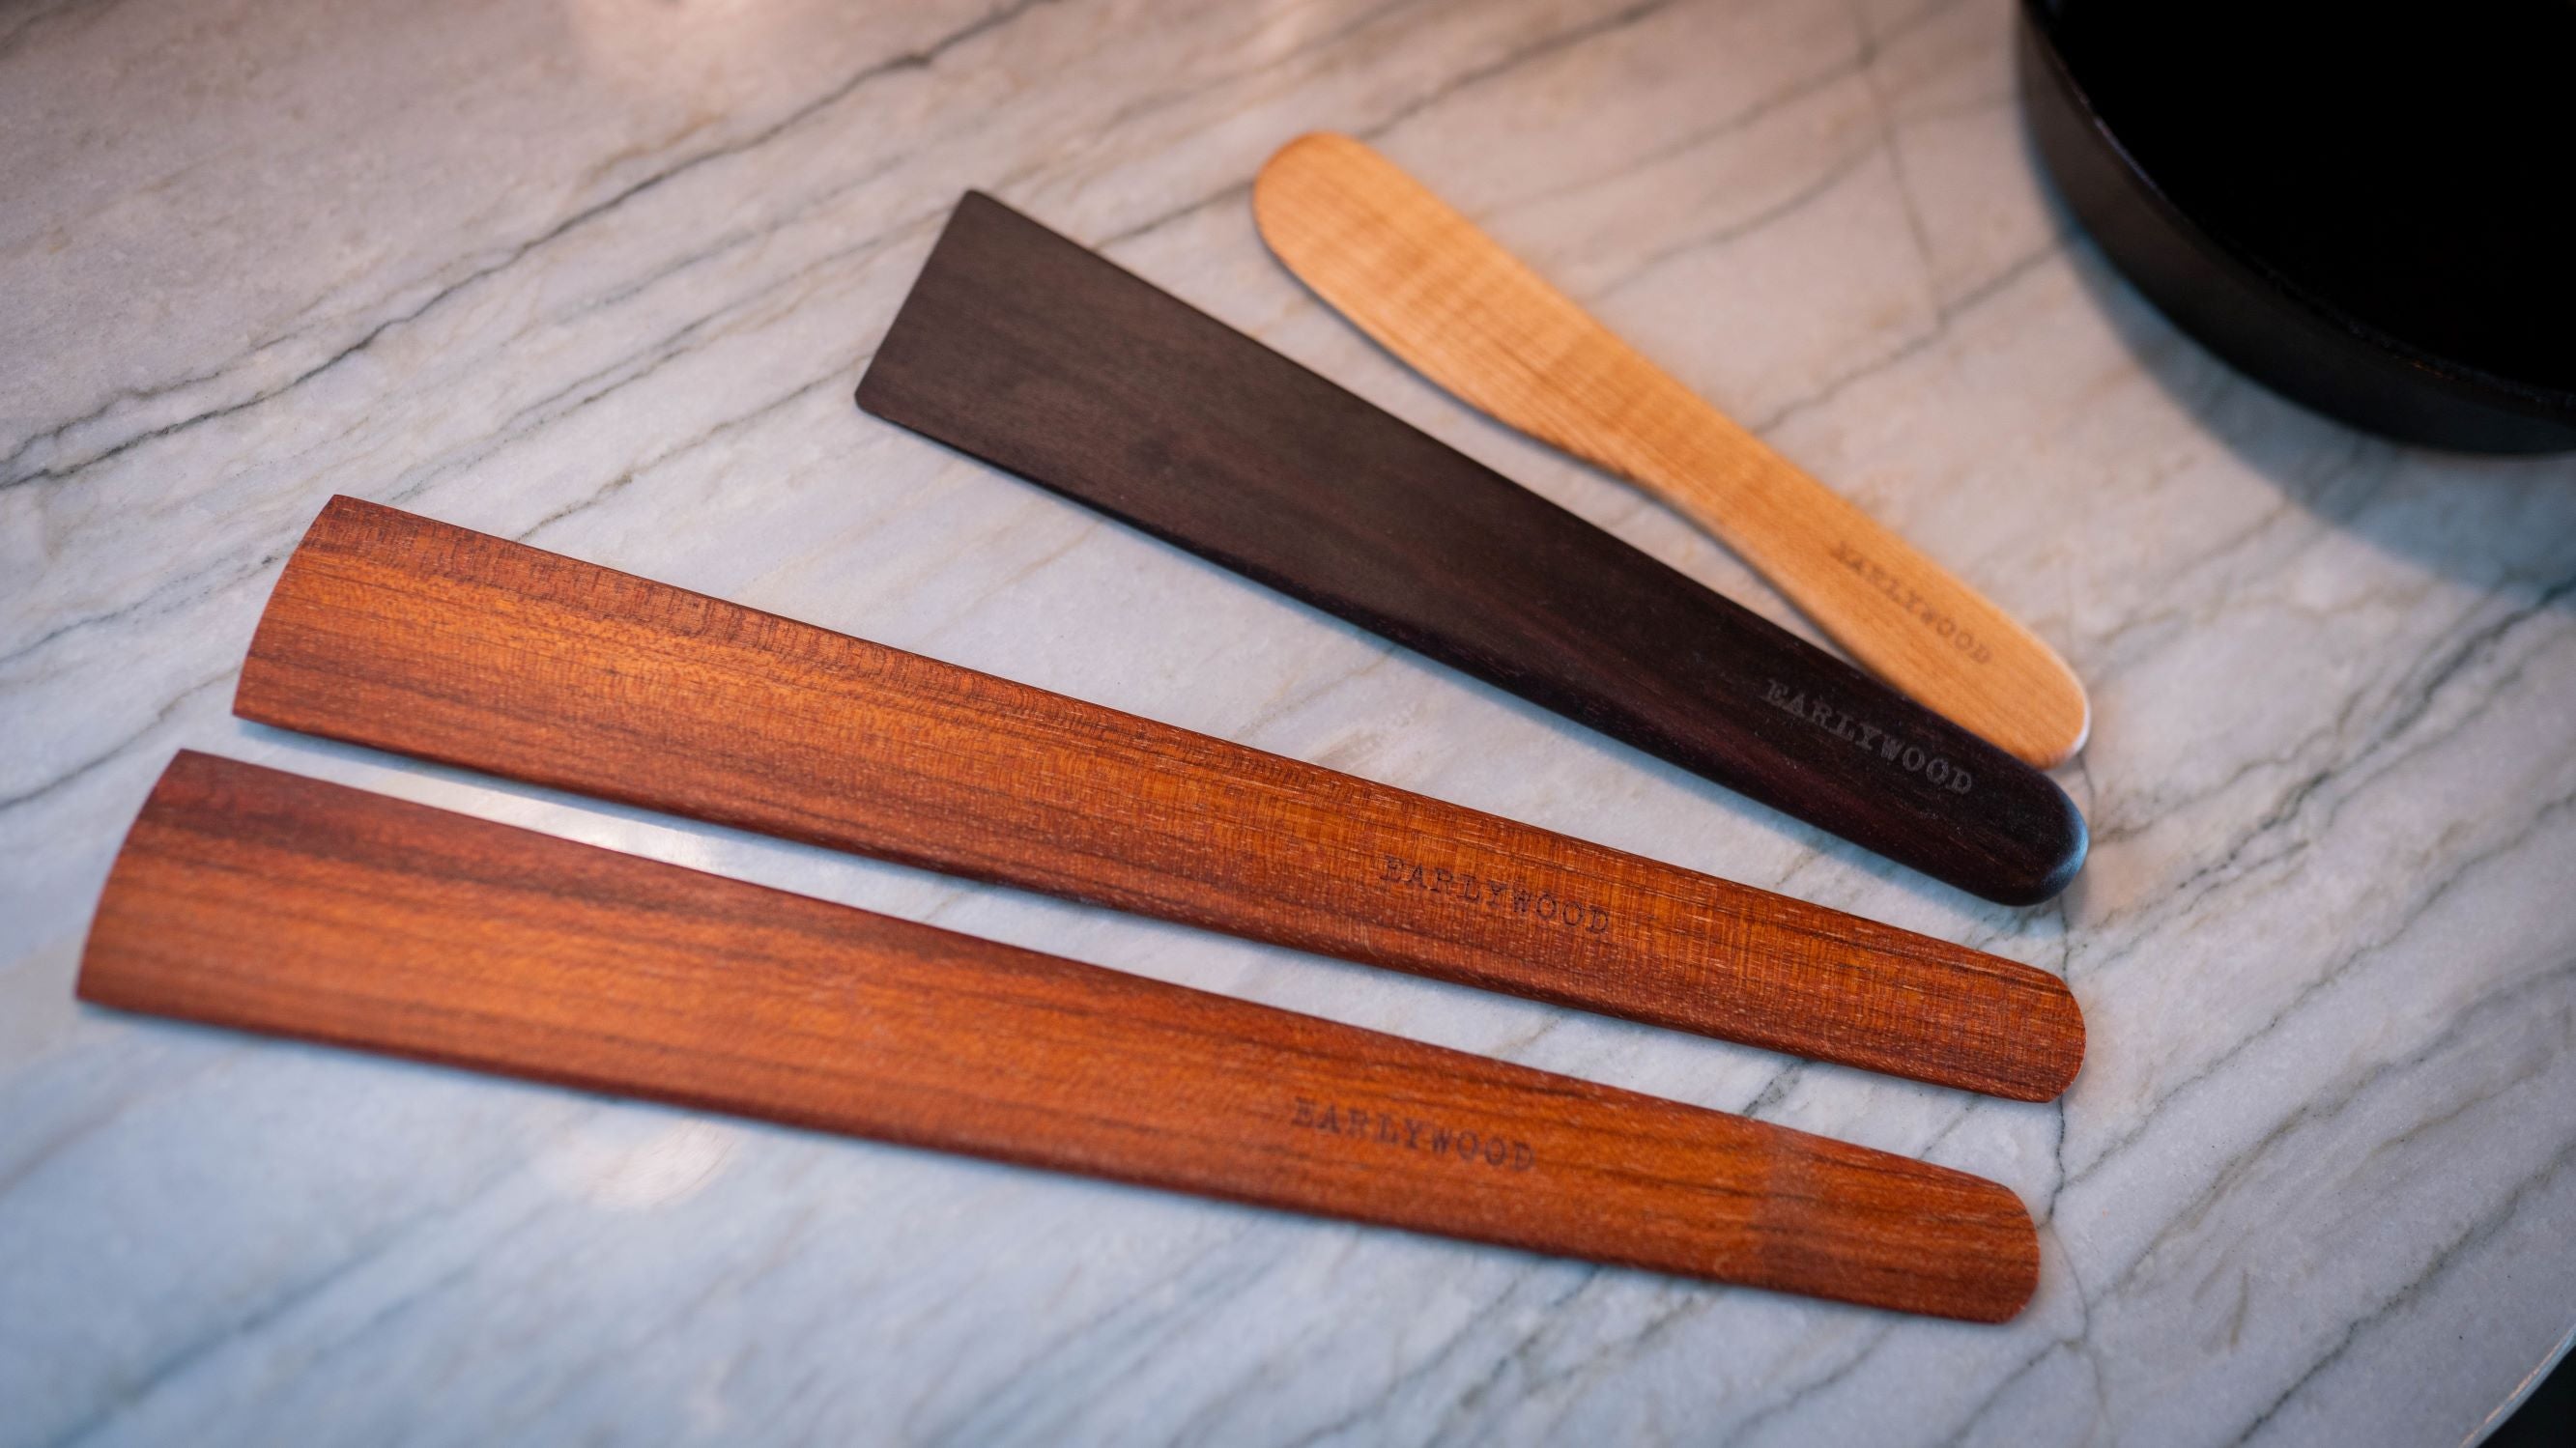 Handmade 4-piece wooden spatula set